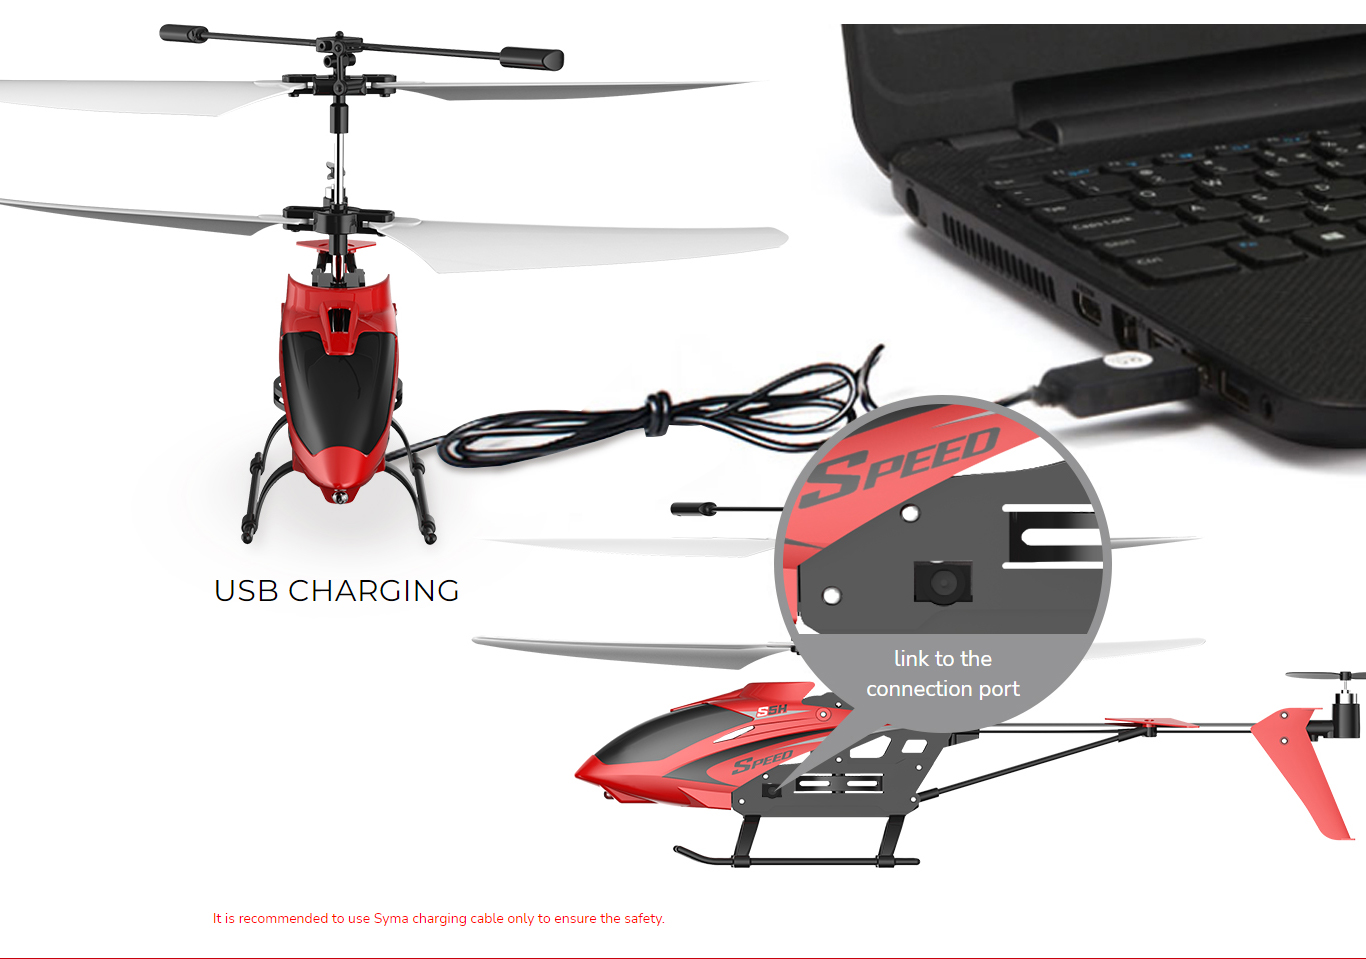 شارژ هلیکوپتر کنترلی فقط با یک کابل USB